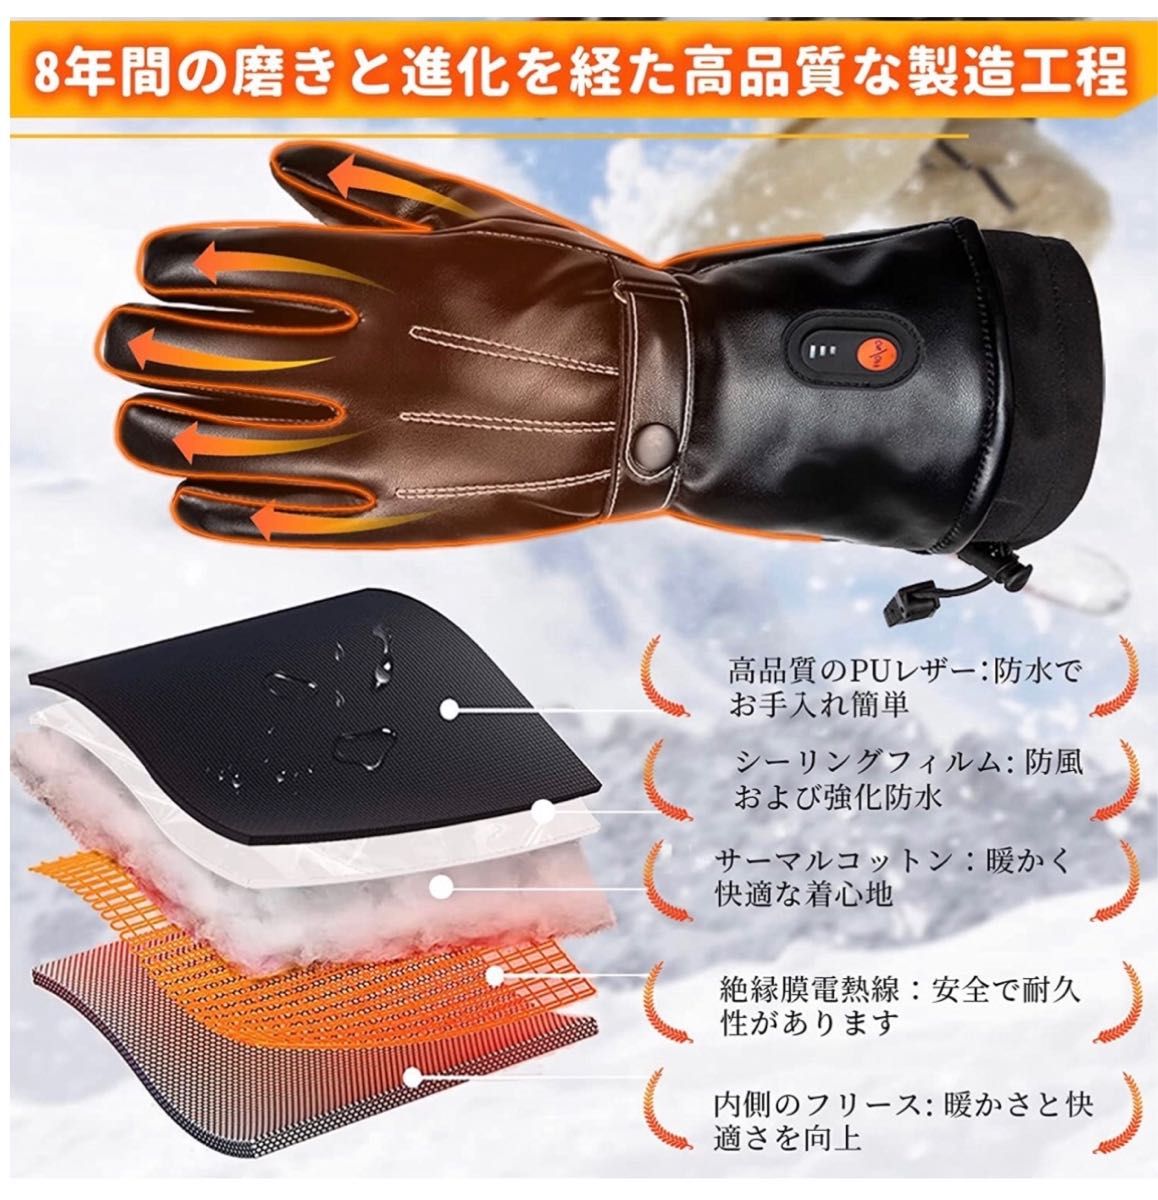 電熱グローブ 皮質 防寒 防水 ヒーター手袋 6000mAh×2個バッテリー付属 usb充電式 電気手袋 タッチパネル対応 